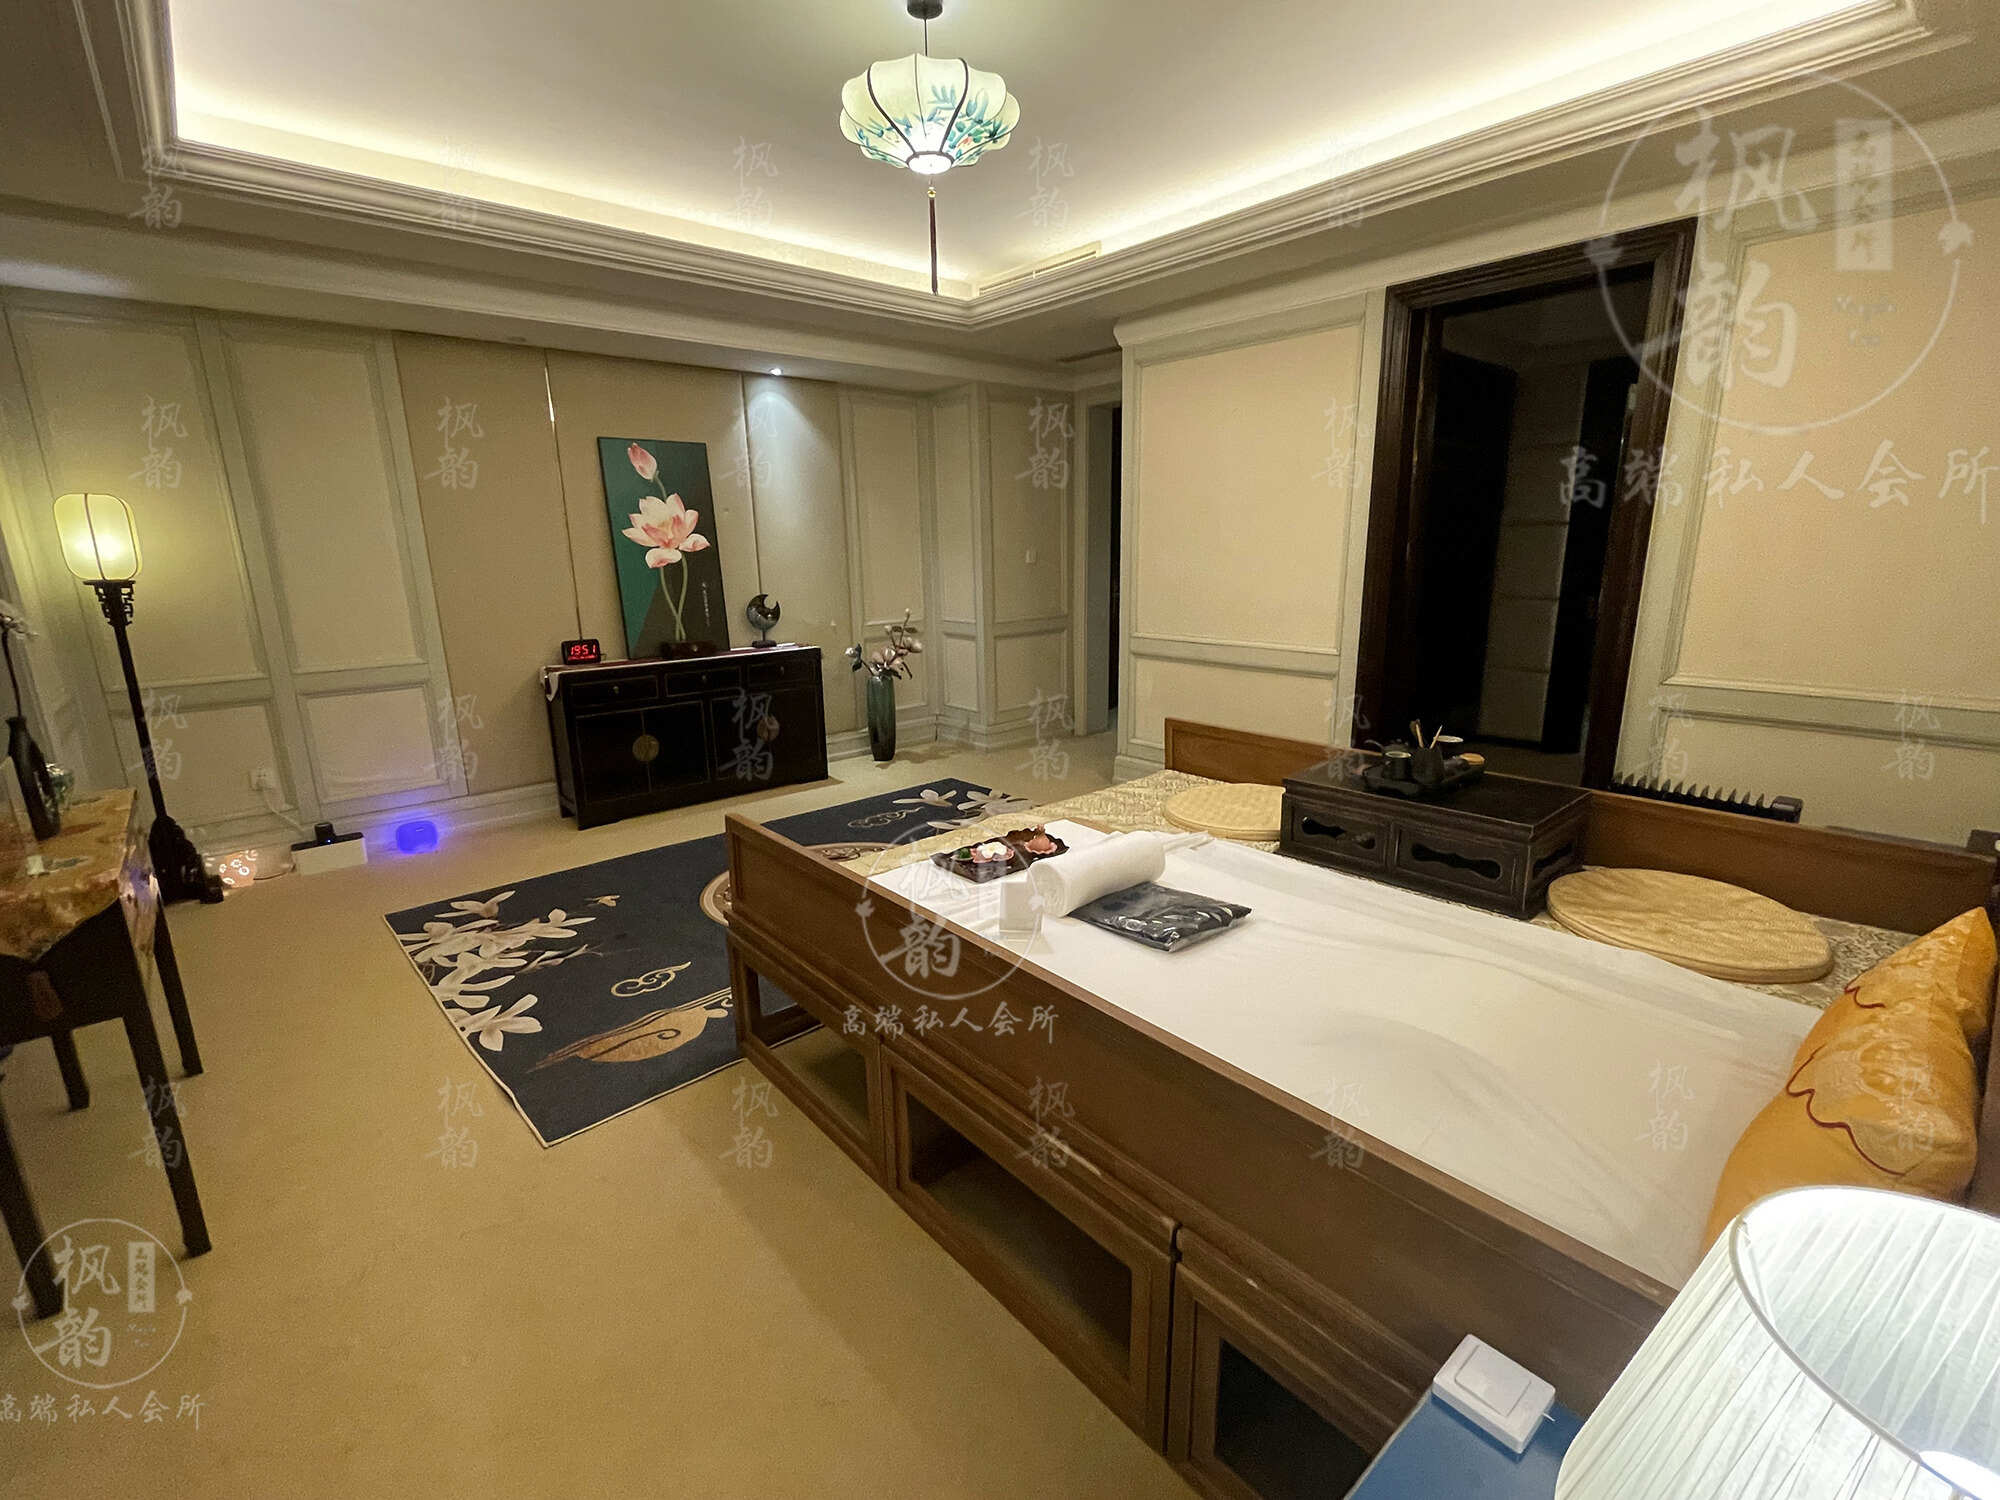 常州天津渔阳鼓楼人气优选沐足会馆房间也很干净，舒适的spa体验